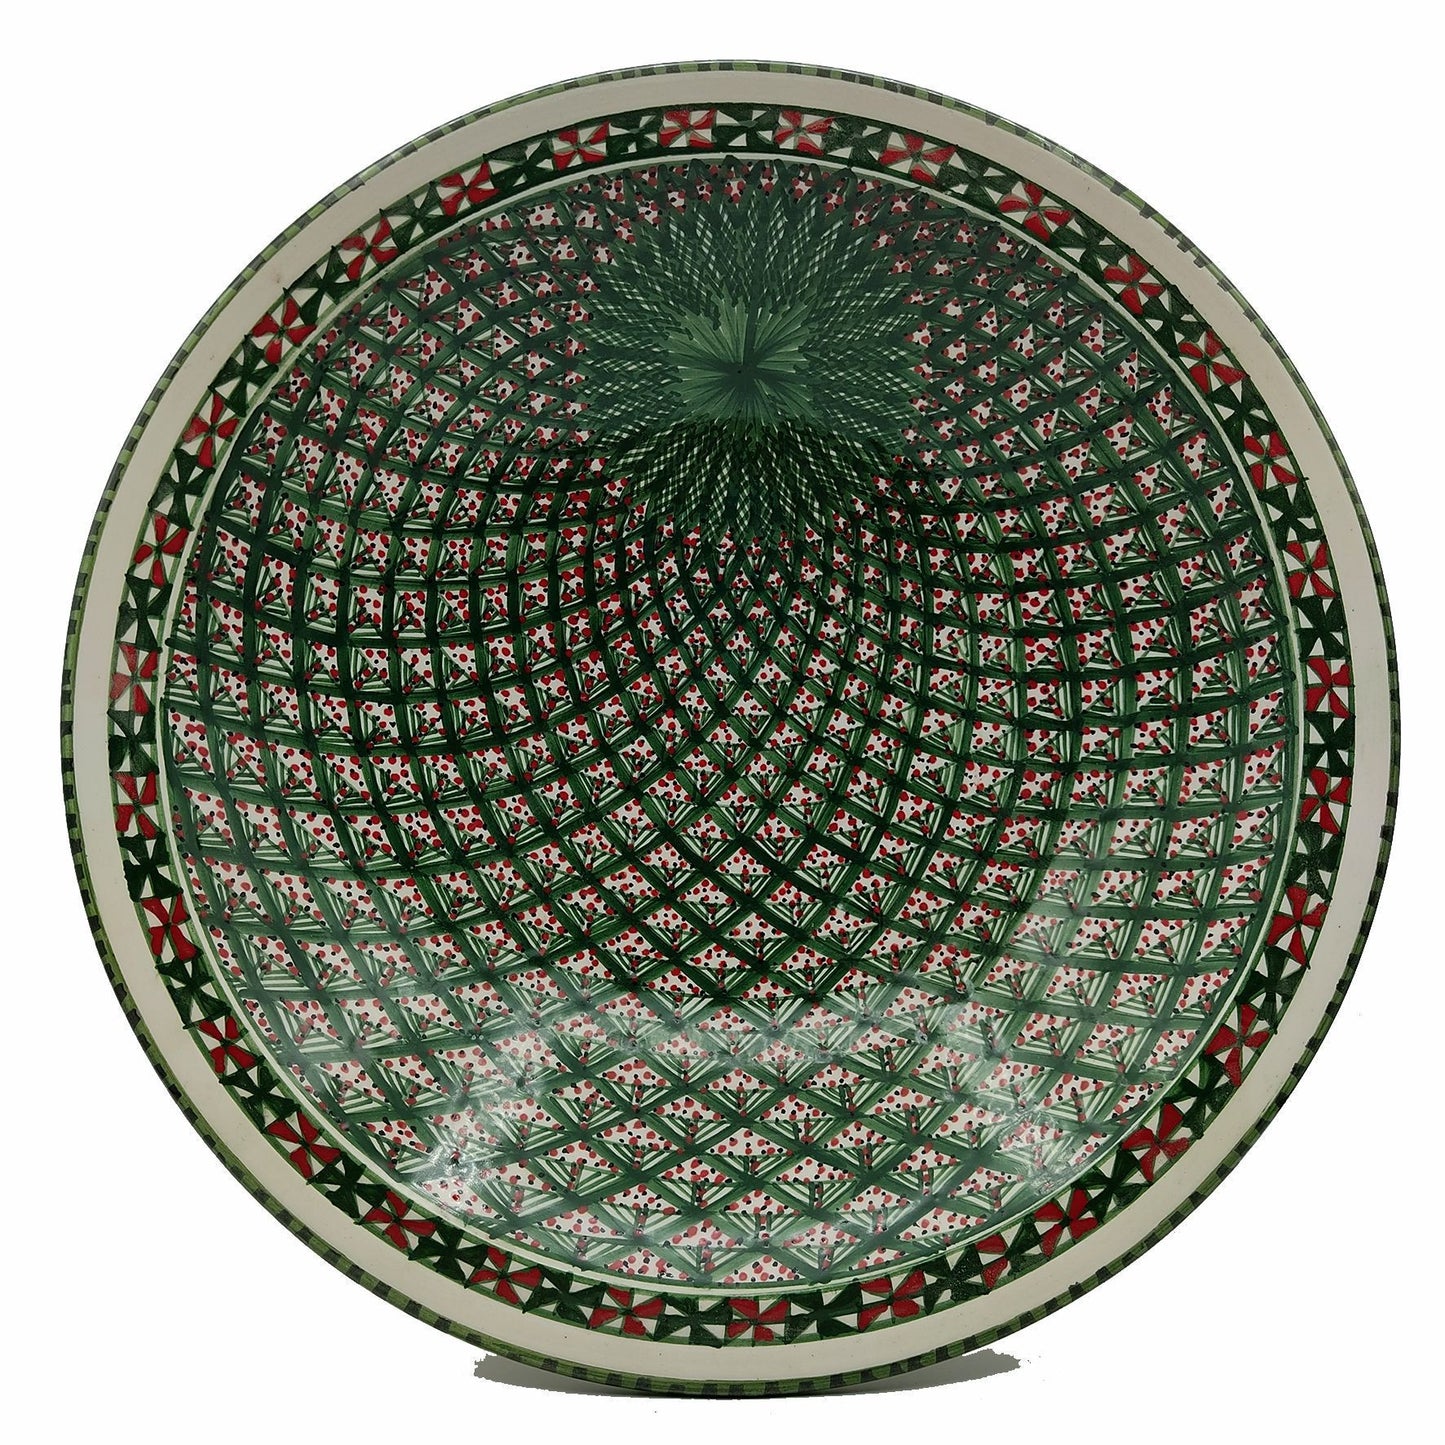 Piatto Ceramica Bianca Alta Qualita Portata Decorativo Etnic Tunisino 1301210936